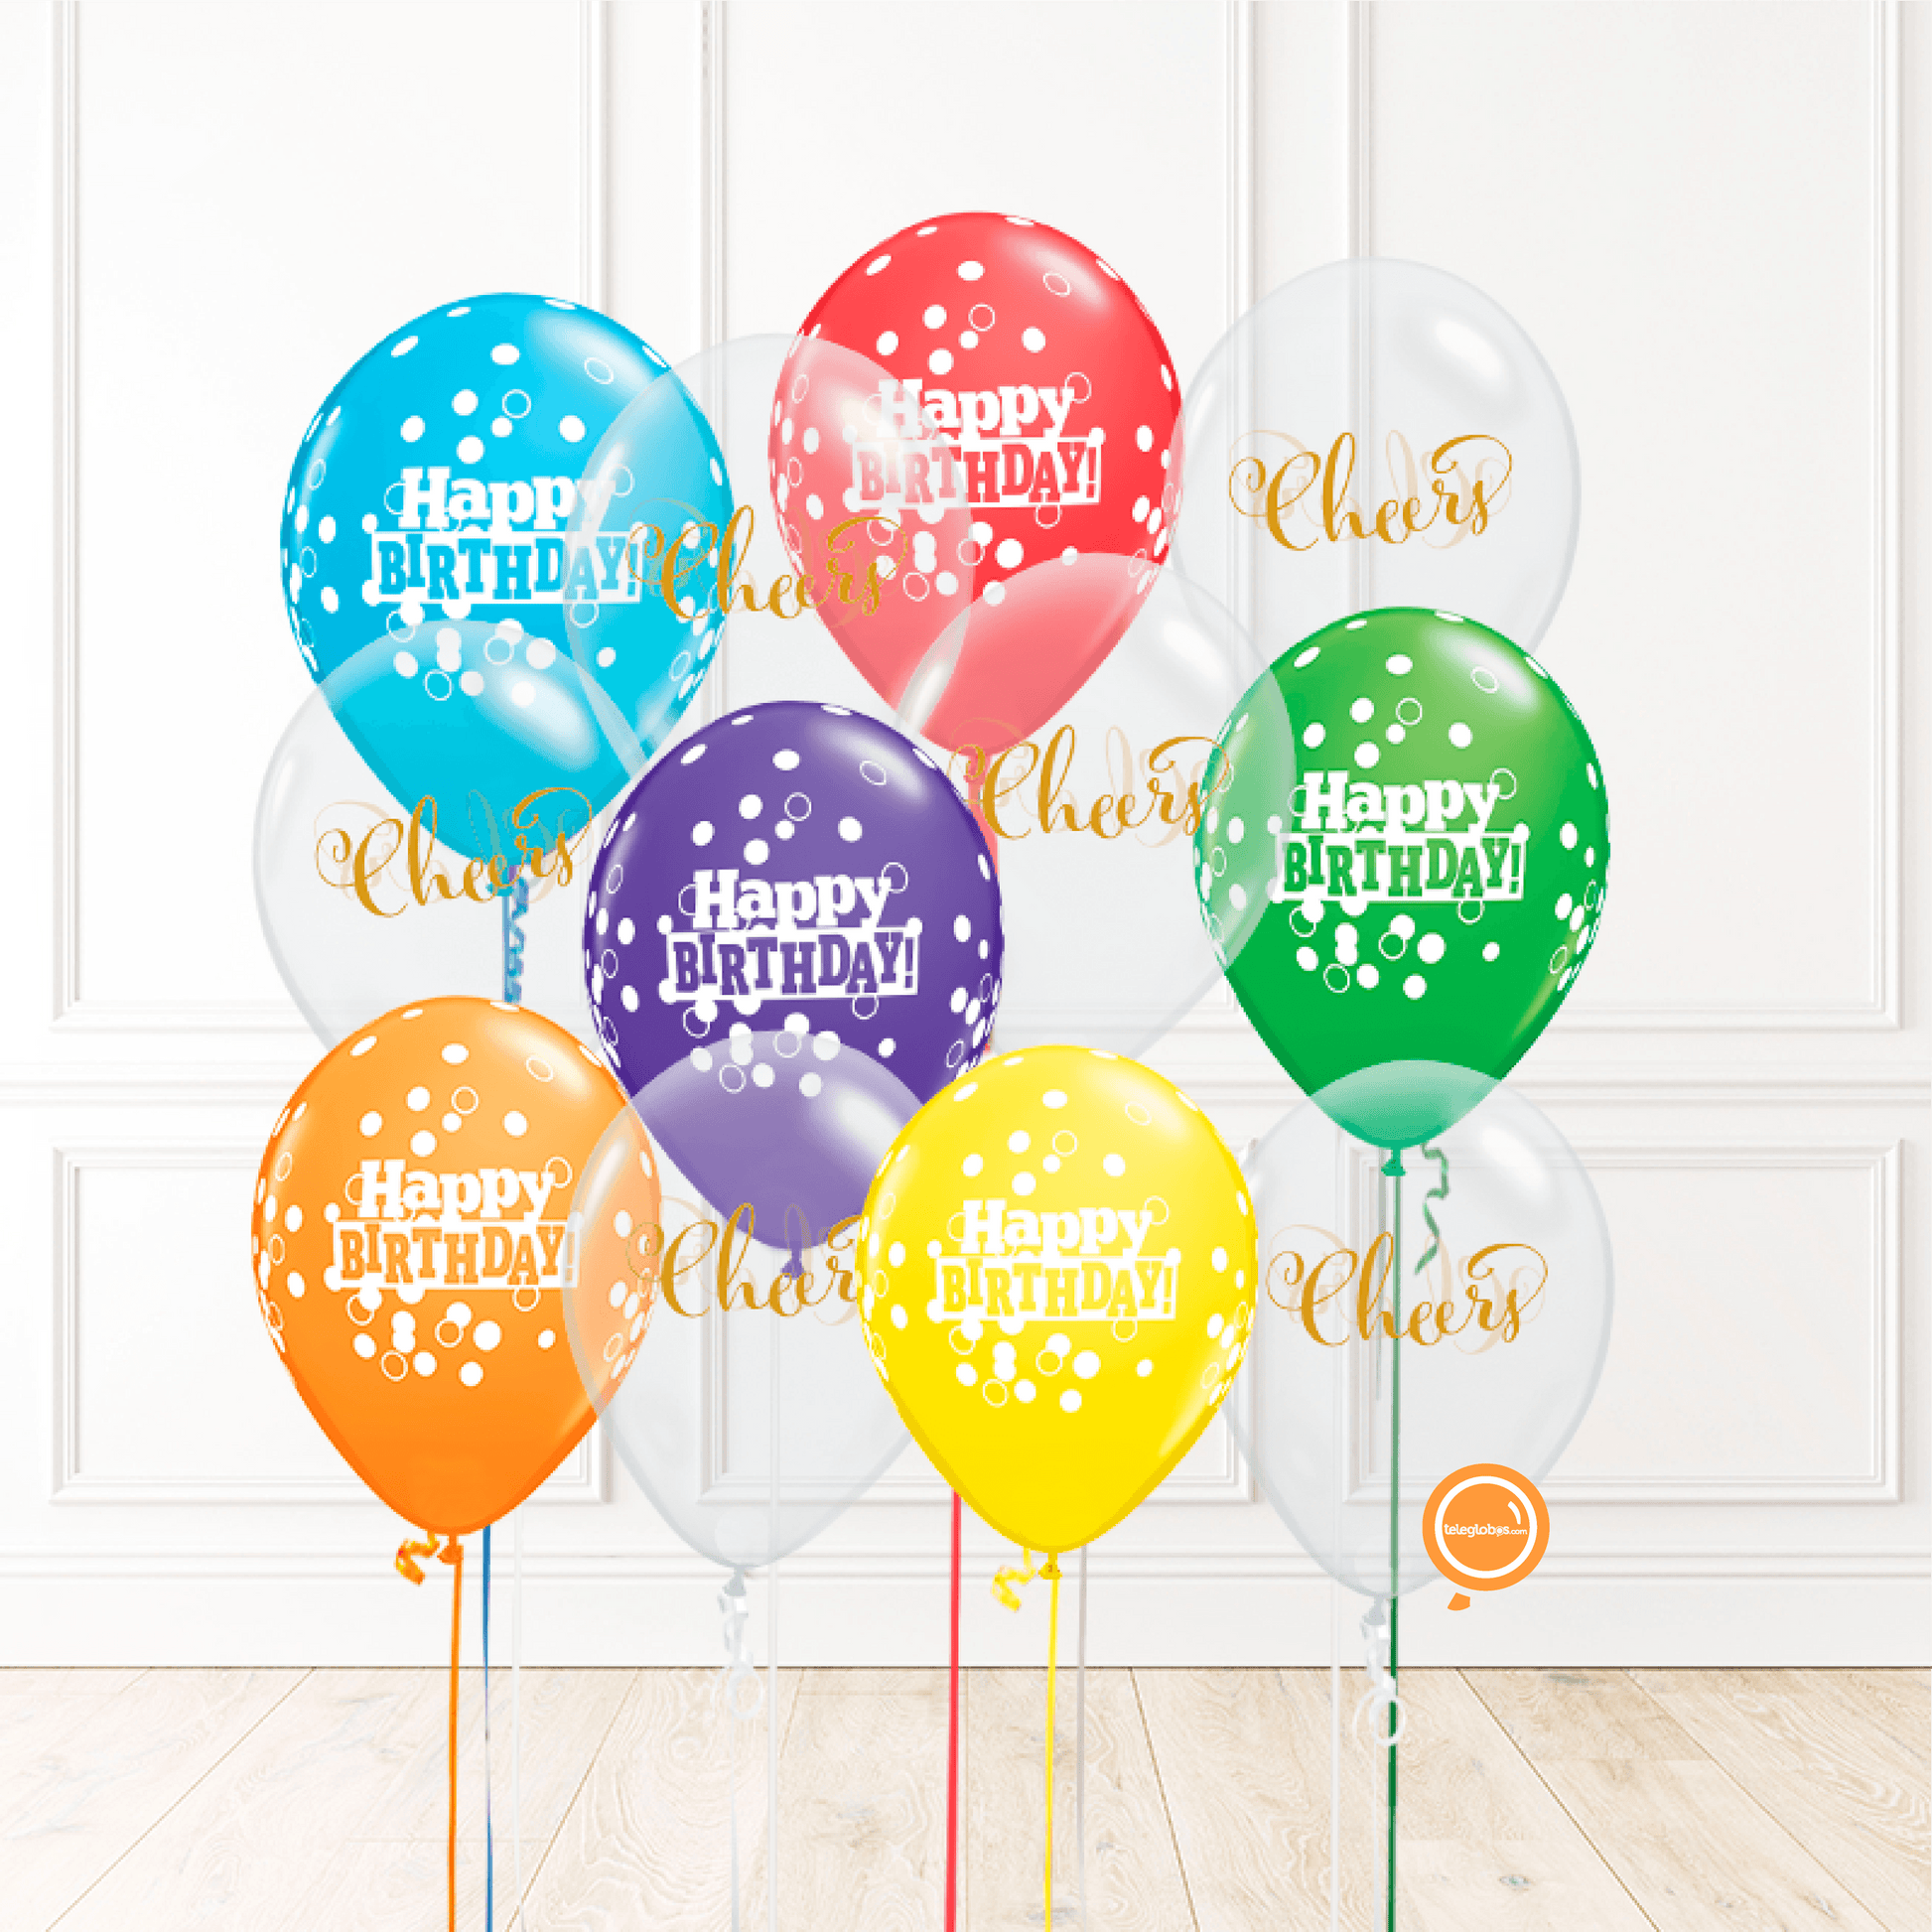 12 globos inflados con helio -Happy Birthday/Cheers- Bio* -RAC013-.